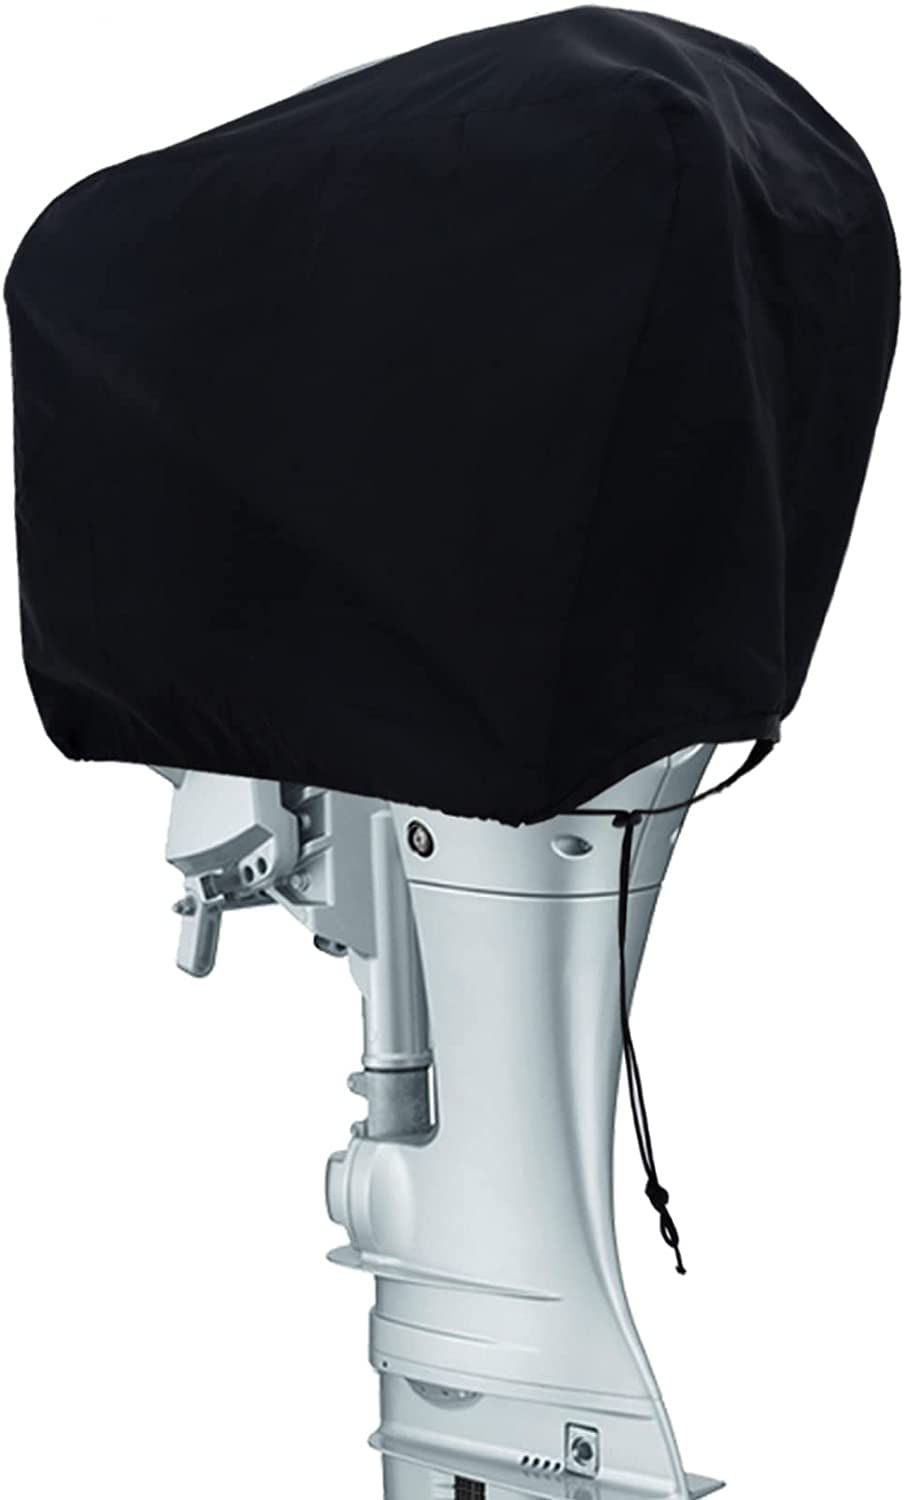 Coverify Bootsmotor Außenbordmotorabdeckung wasserabweisendes 600D Oxford-Gewebe, Schutzhülle Außenborder Abdeckung Außenbordmotor Halbabdeckung passend für bis zu 48 x 27 x 35cm Motoren, Schwarz von Coverify